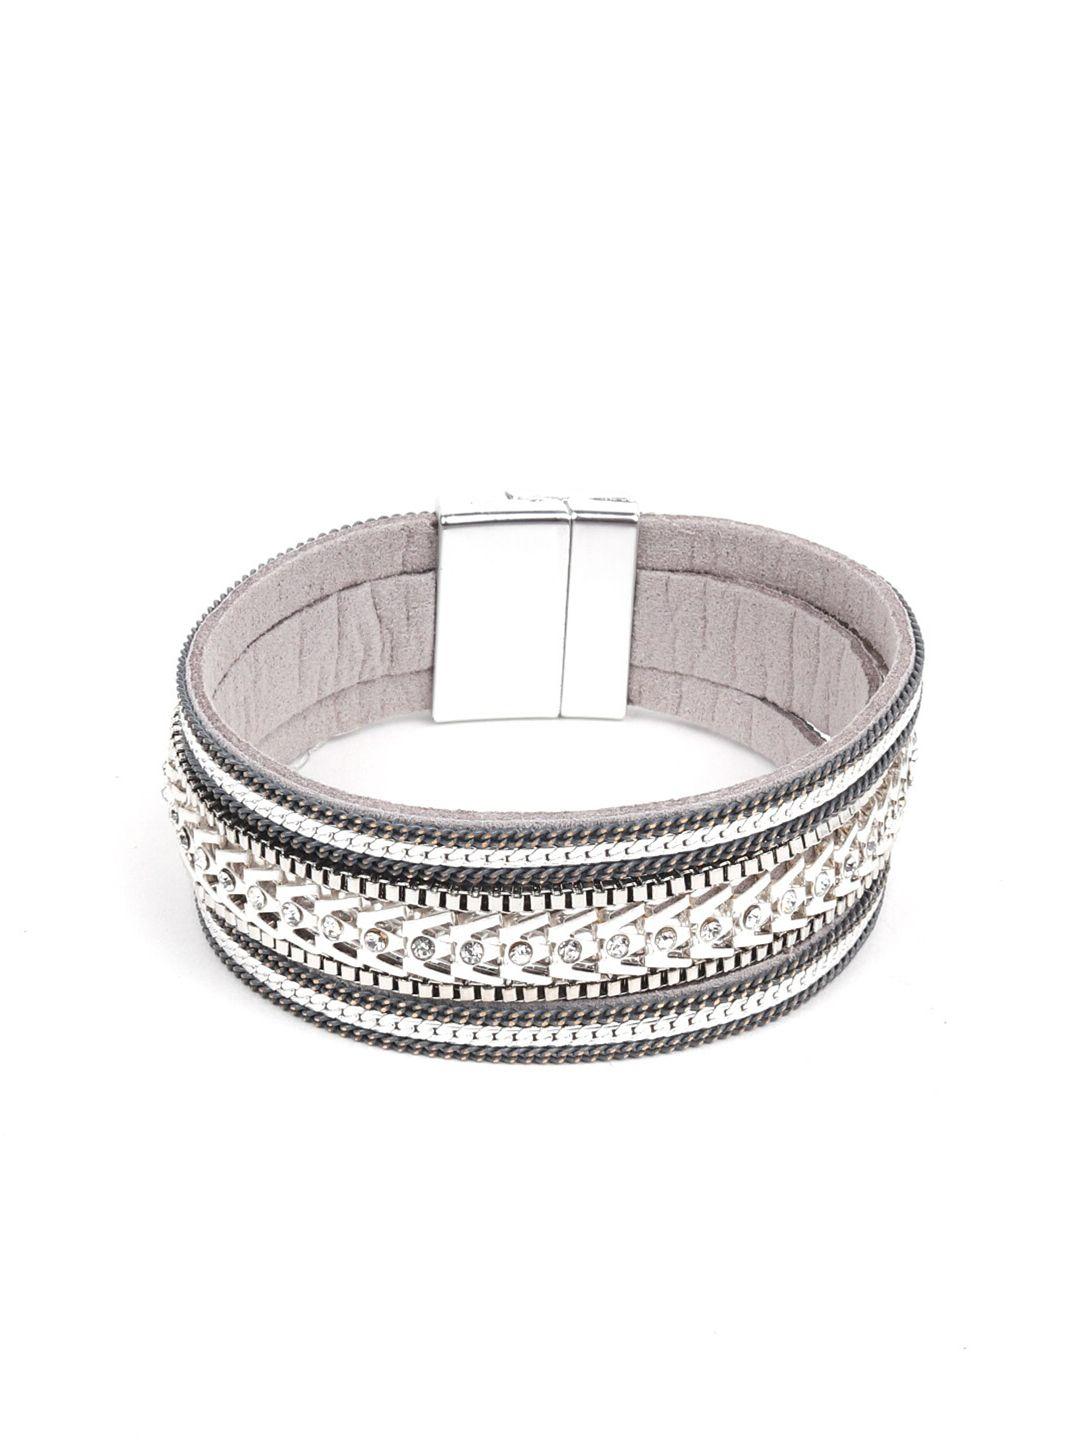 odette women grey leather wraparound bracelet